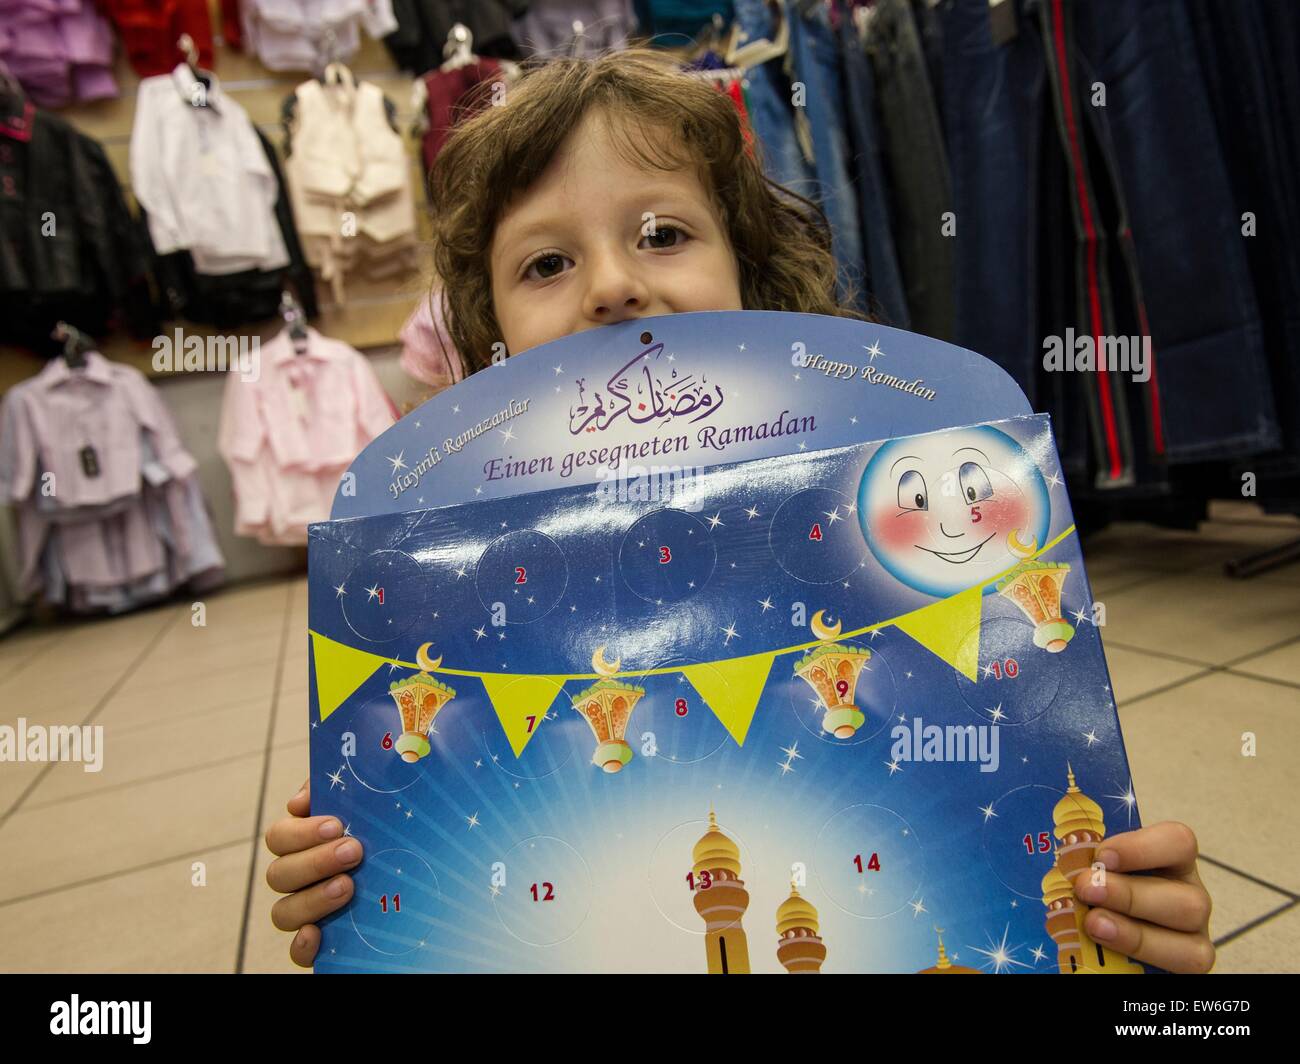 Berlin, Allemagne. 18 Juin, 2015. 4 ans Rinora pose avec un calendrier du Ramadan à Berlin, Allemagne, 18 juin 2015, que les musulmans du monde entier d'observer le premier jour de mois de jeûne de Ramadan. Semblable à un calendrier de l'avent, son enfant permet l'équivalent du Ramadan Banque D'Images